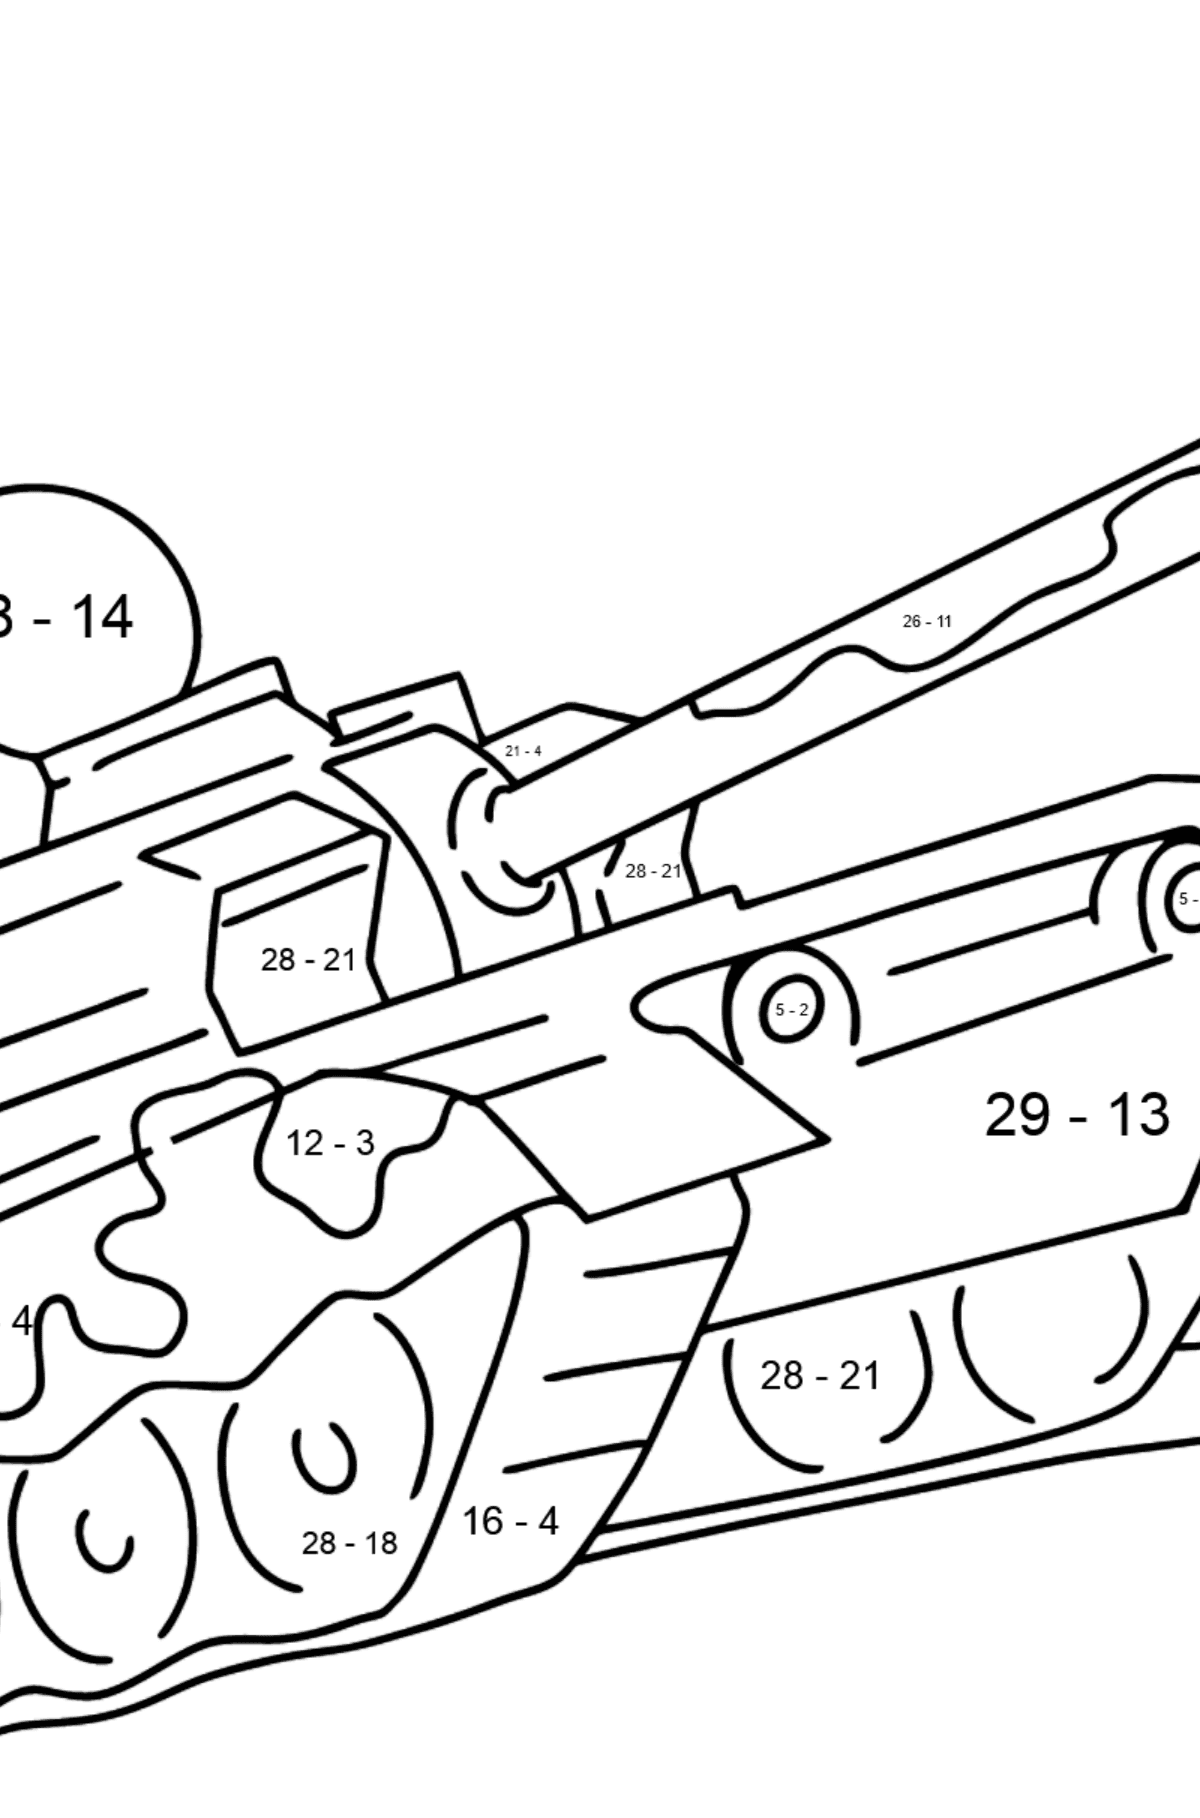 Desenho para colorir de tanques militares - Colorindo com Matemática - Subtração para Crianças